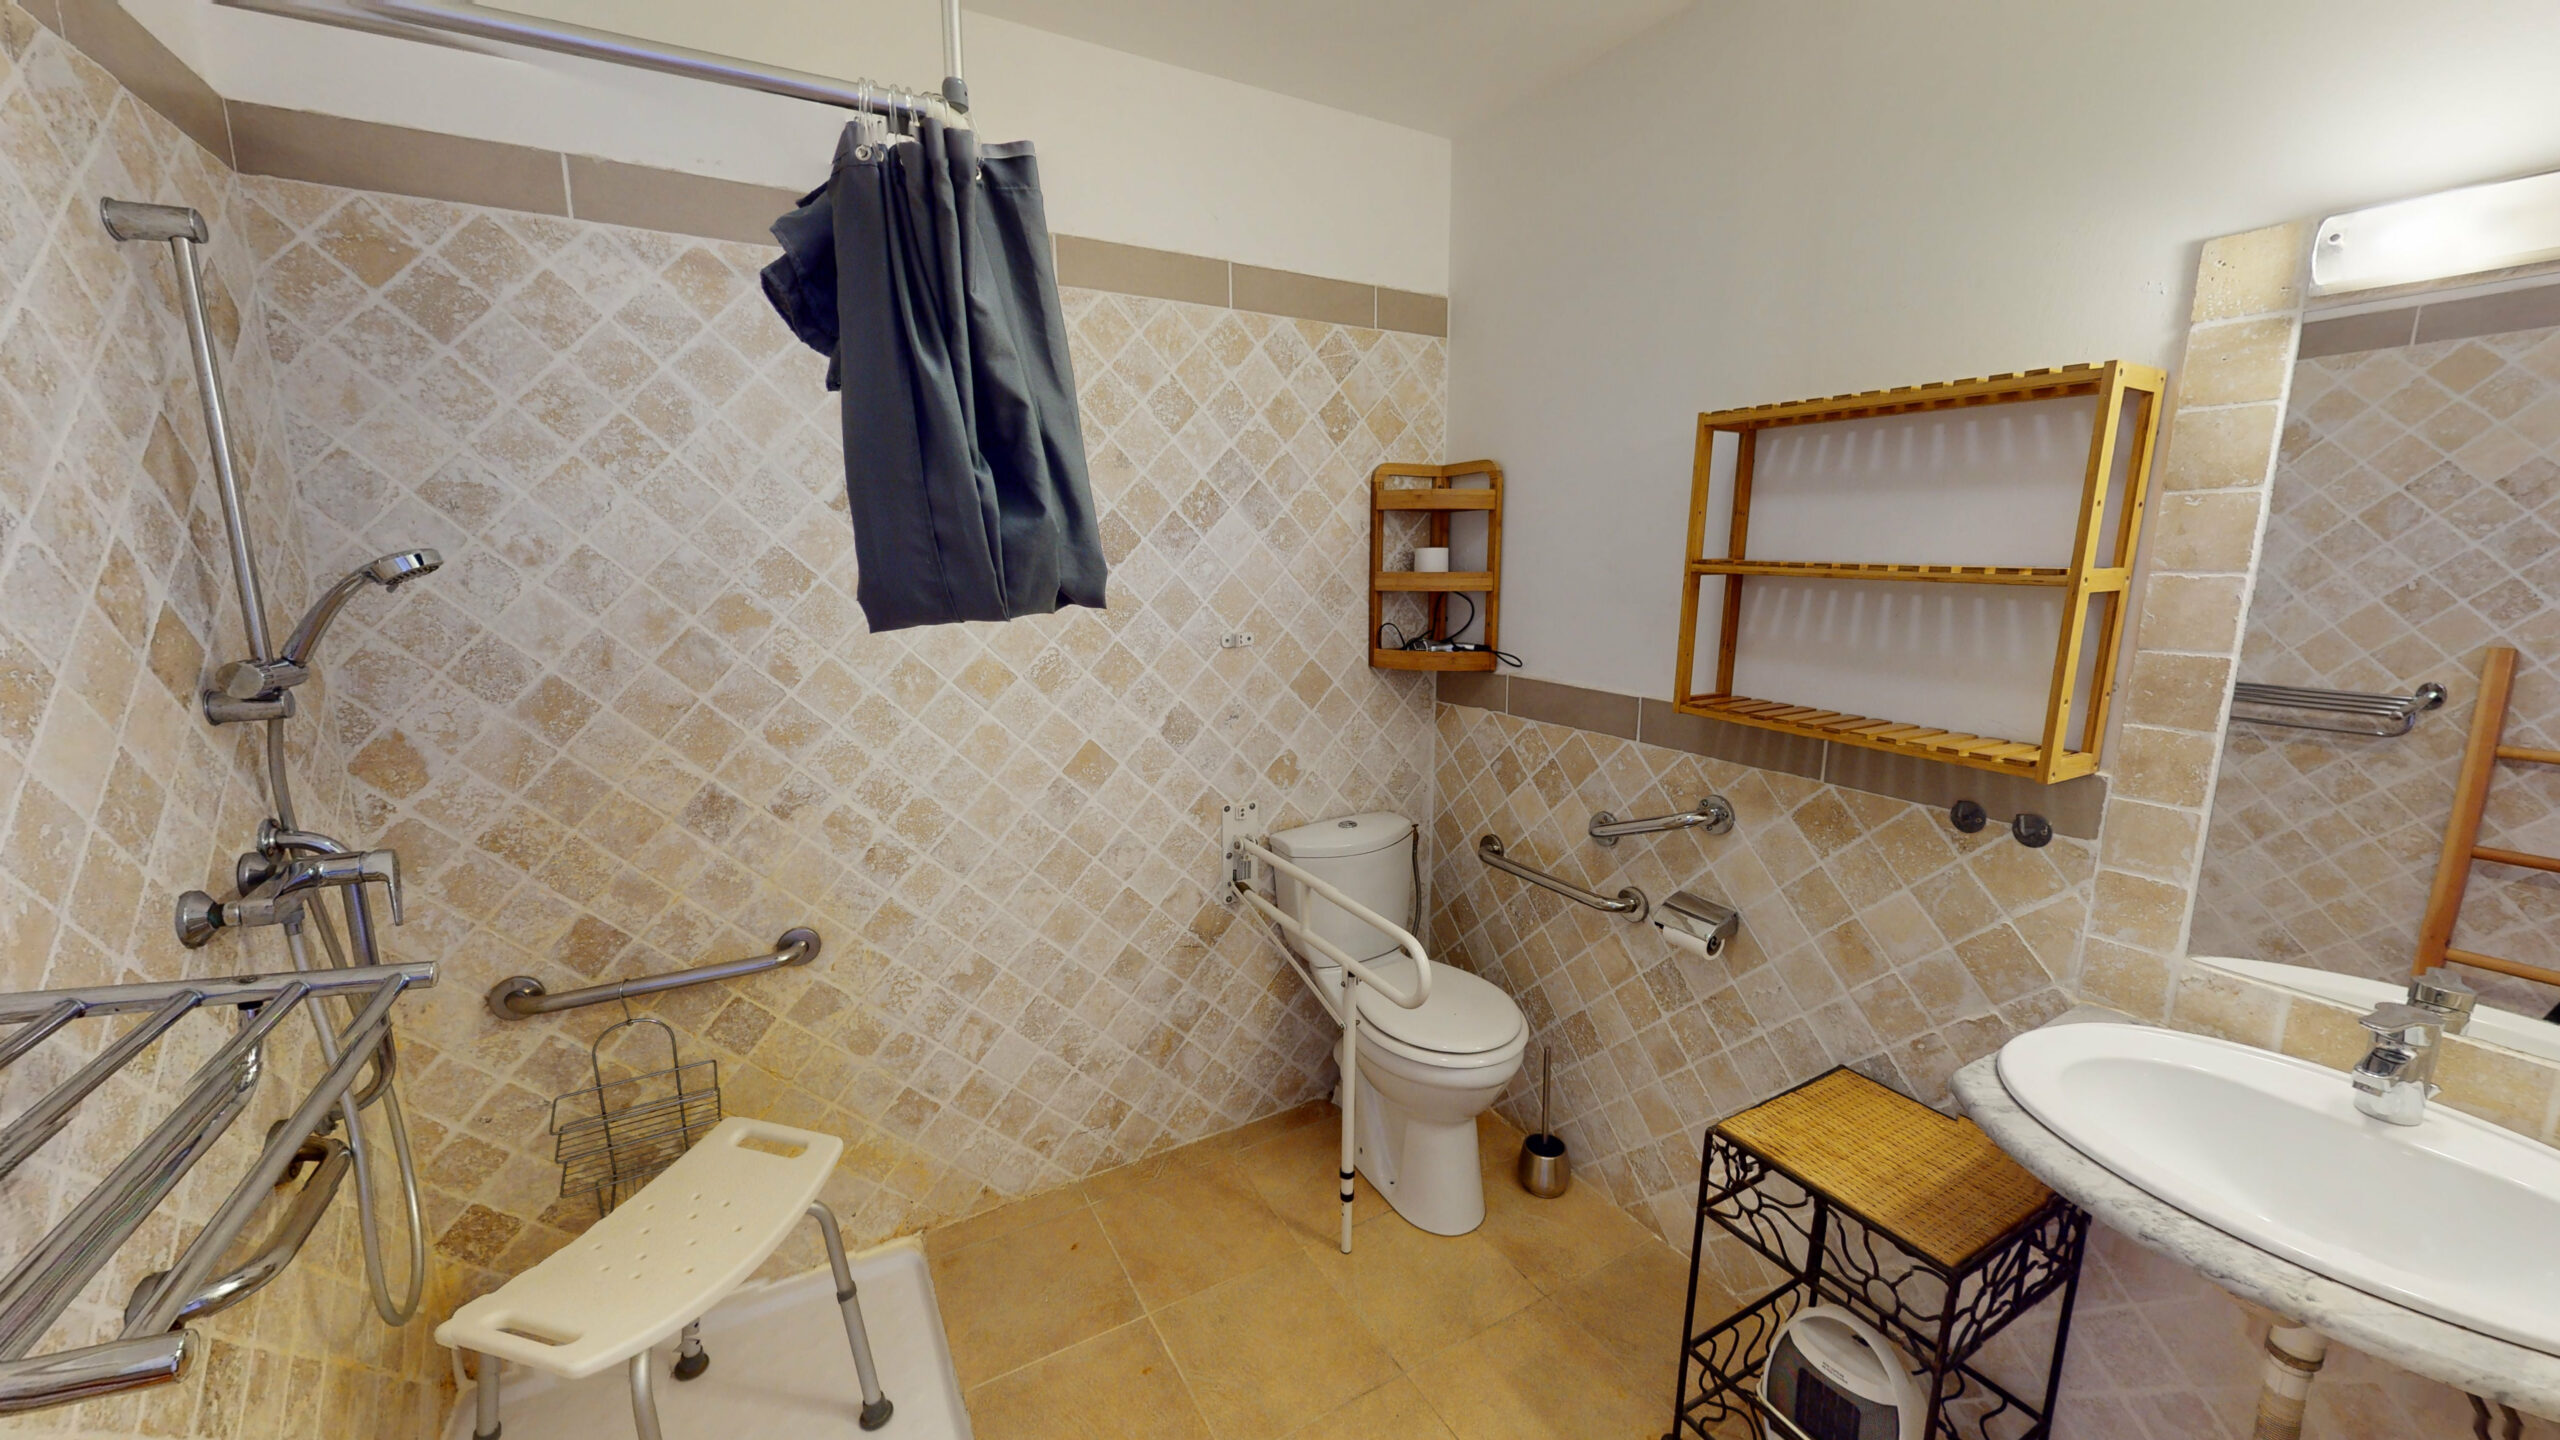 Location gite Lamalou les bains salle d eau Ibiscus accessible handicapés